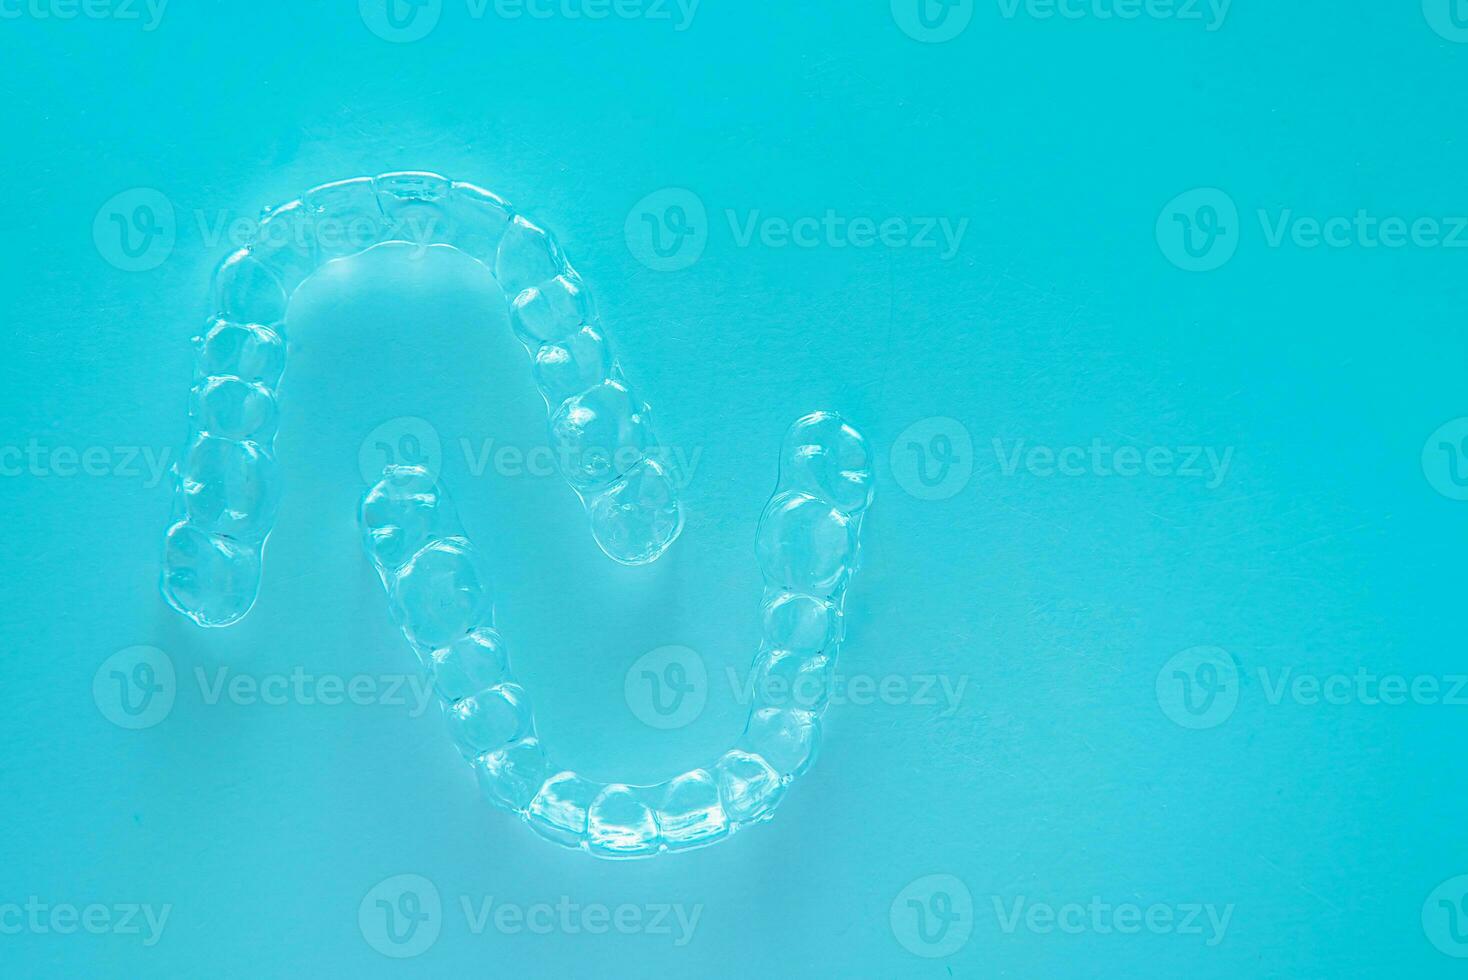 onzichtbaar tandheelkundig tanden haakjes tand aligners Aan turkoois achtergrond. plastic een beugel tandheelkunde vasthouders naar rechtzetten tanden. foto